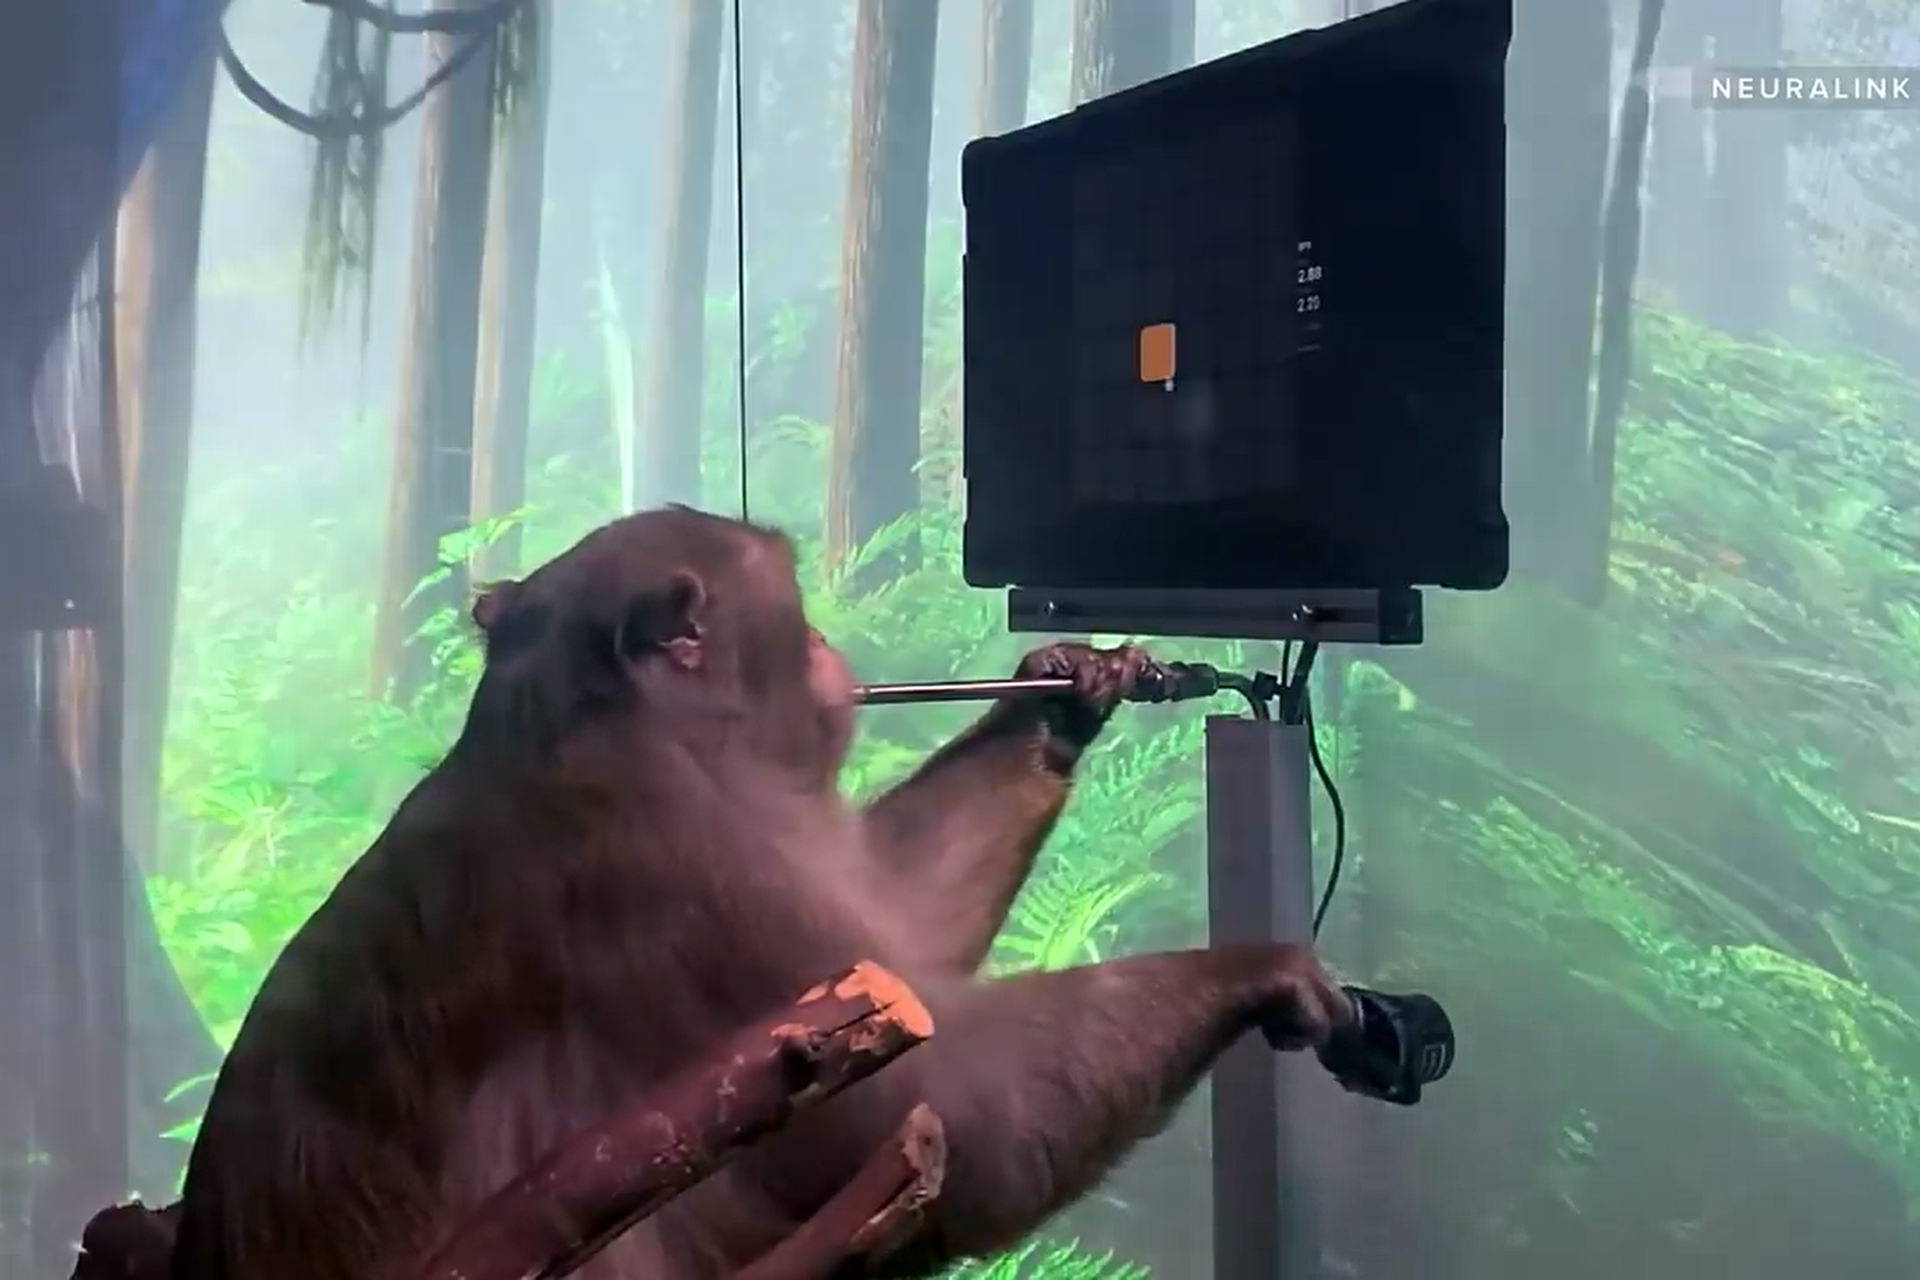 یک میمون با ایمپلنت مغزی نورالینک بازی Pong را انجام داد